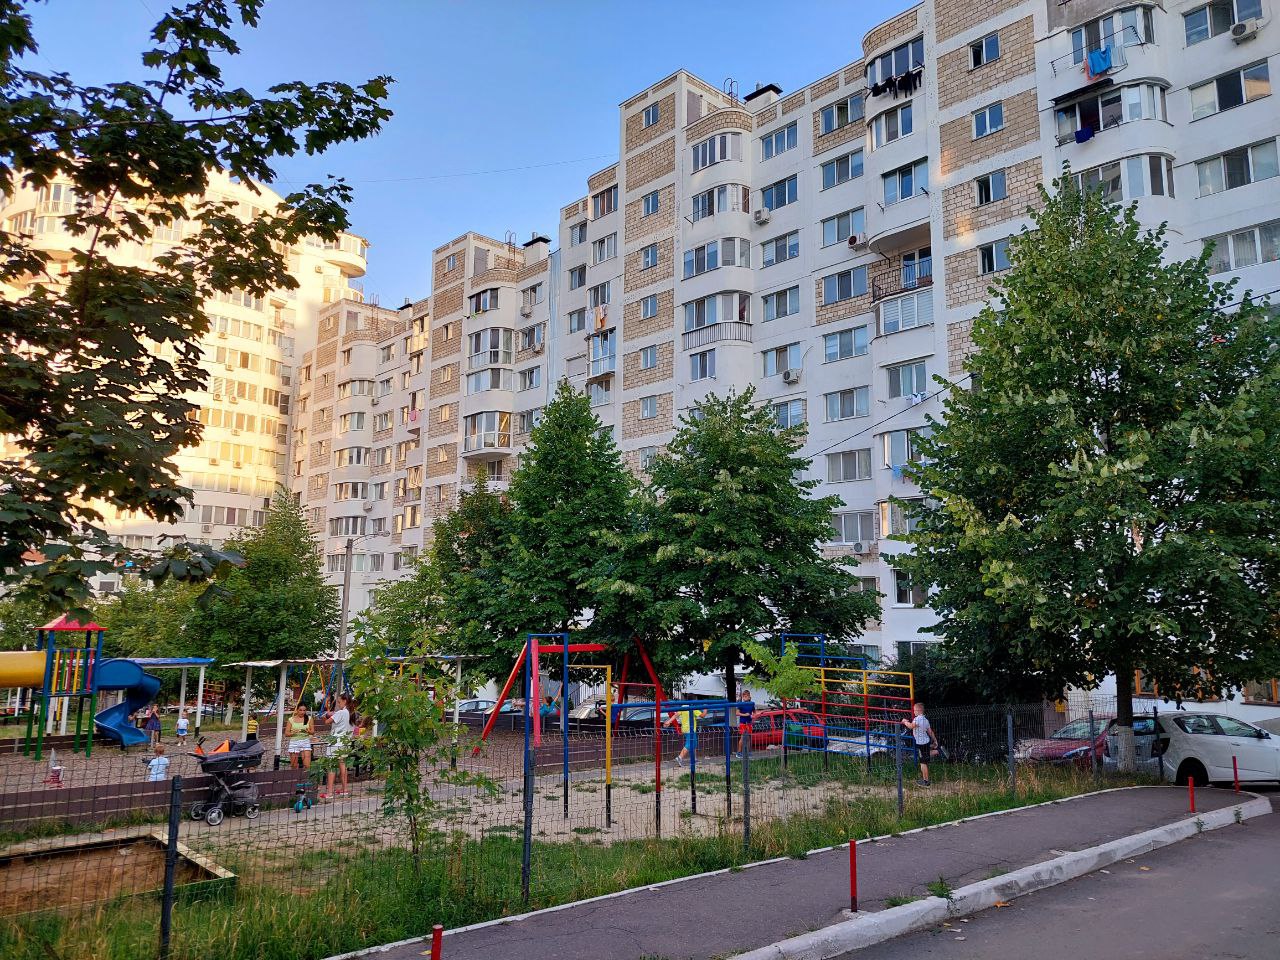 VÂNDUT Apartament de vânzare, Chișinău, sec. Ciocana, bloc nou, 2 odăi, 61m2, et.5